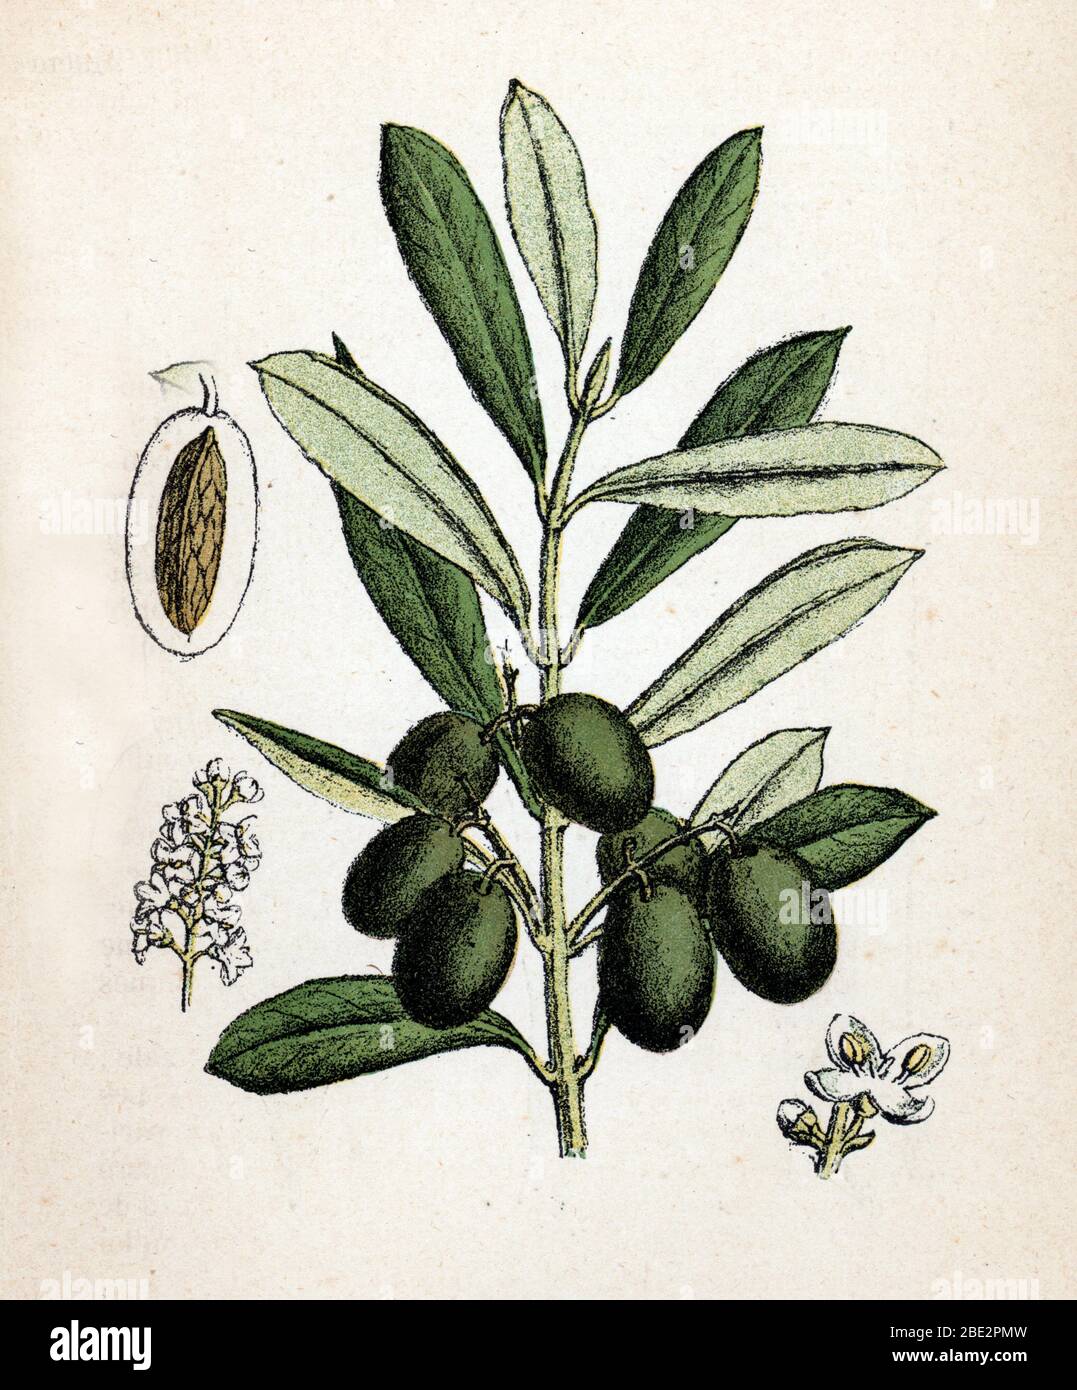 "Branche d'olivier avec olive" (Olea europaea) (Olivo) Planche de botanique tiree de "Atlas colorie des plantes medicinales" de Paul Hariot, 190 Foto Stock